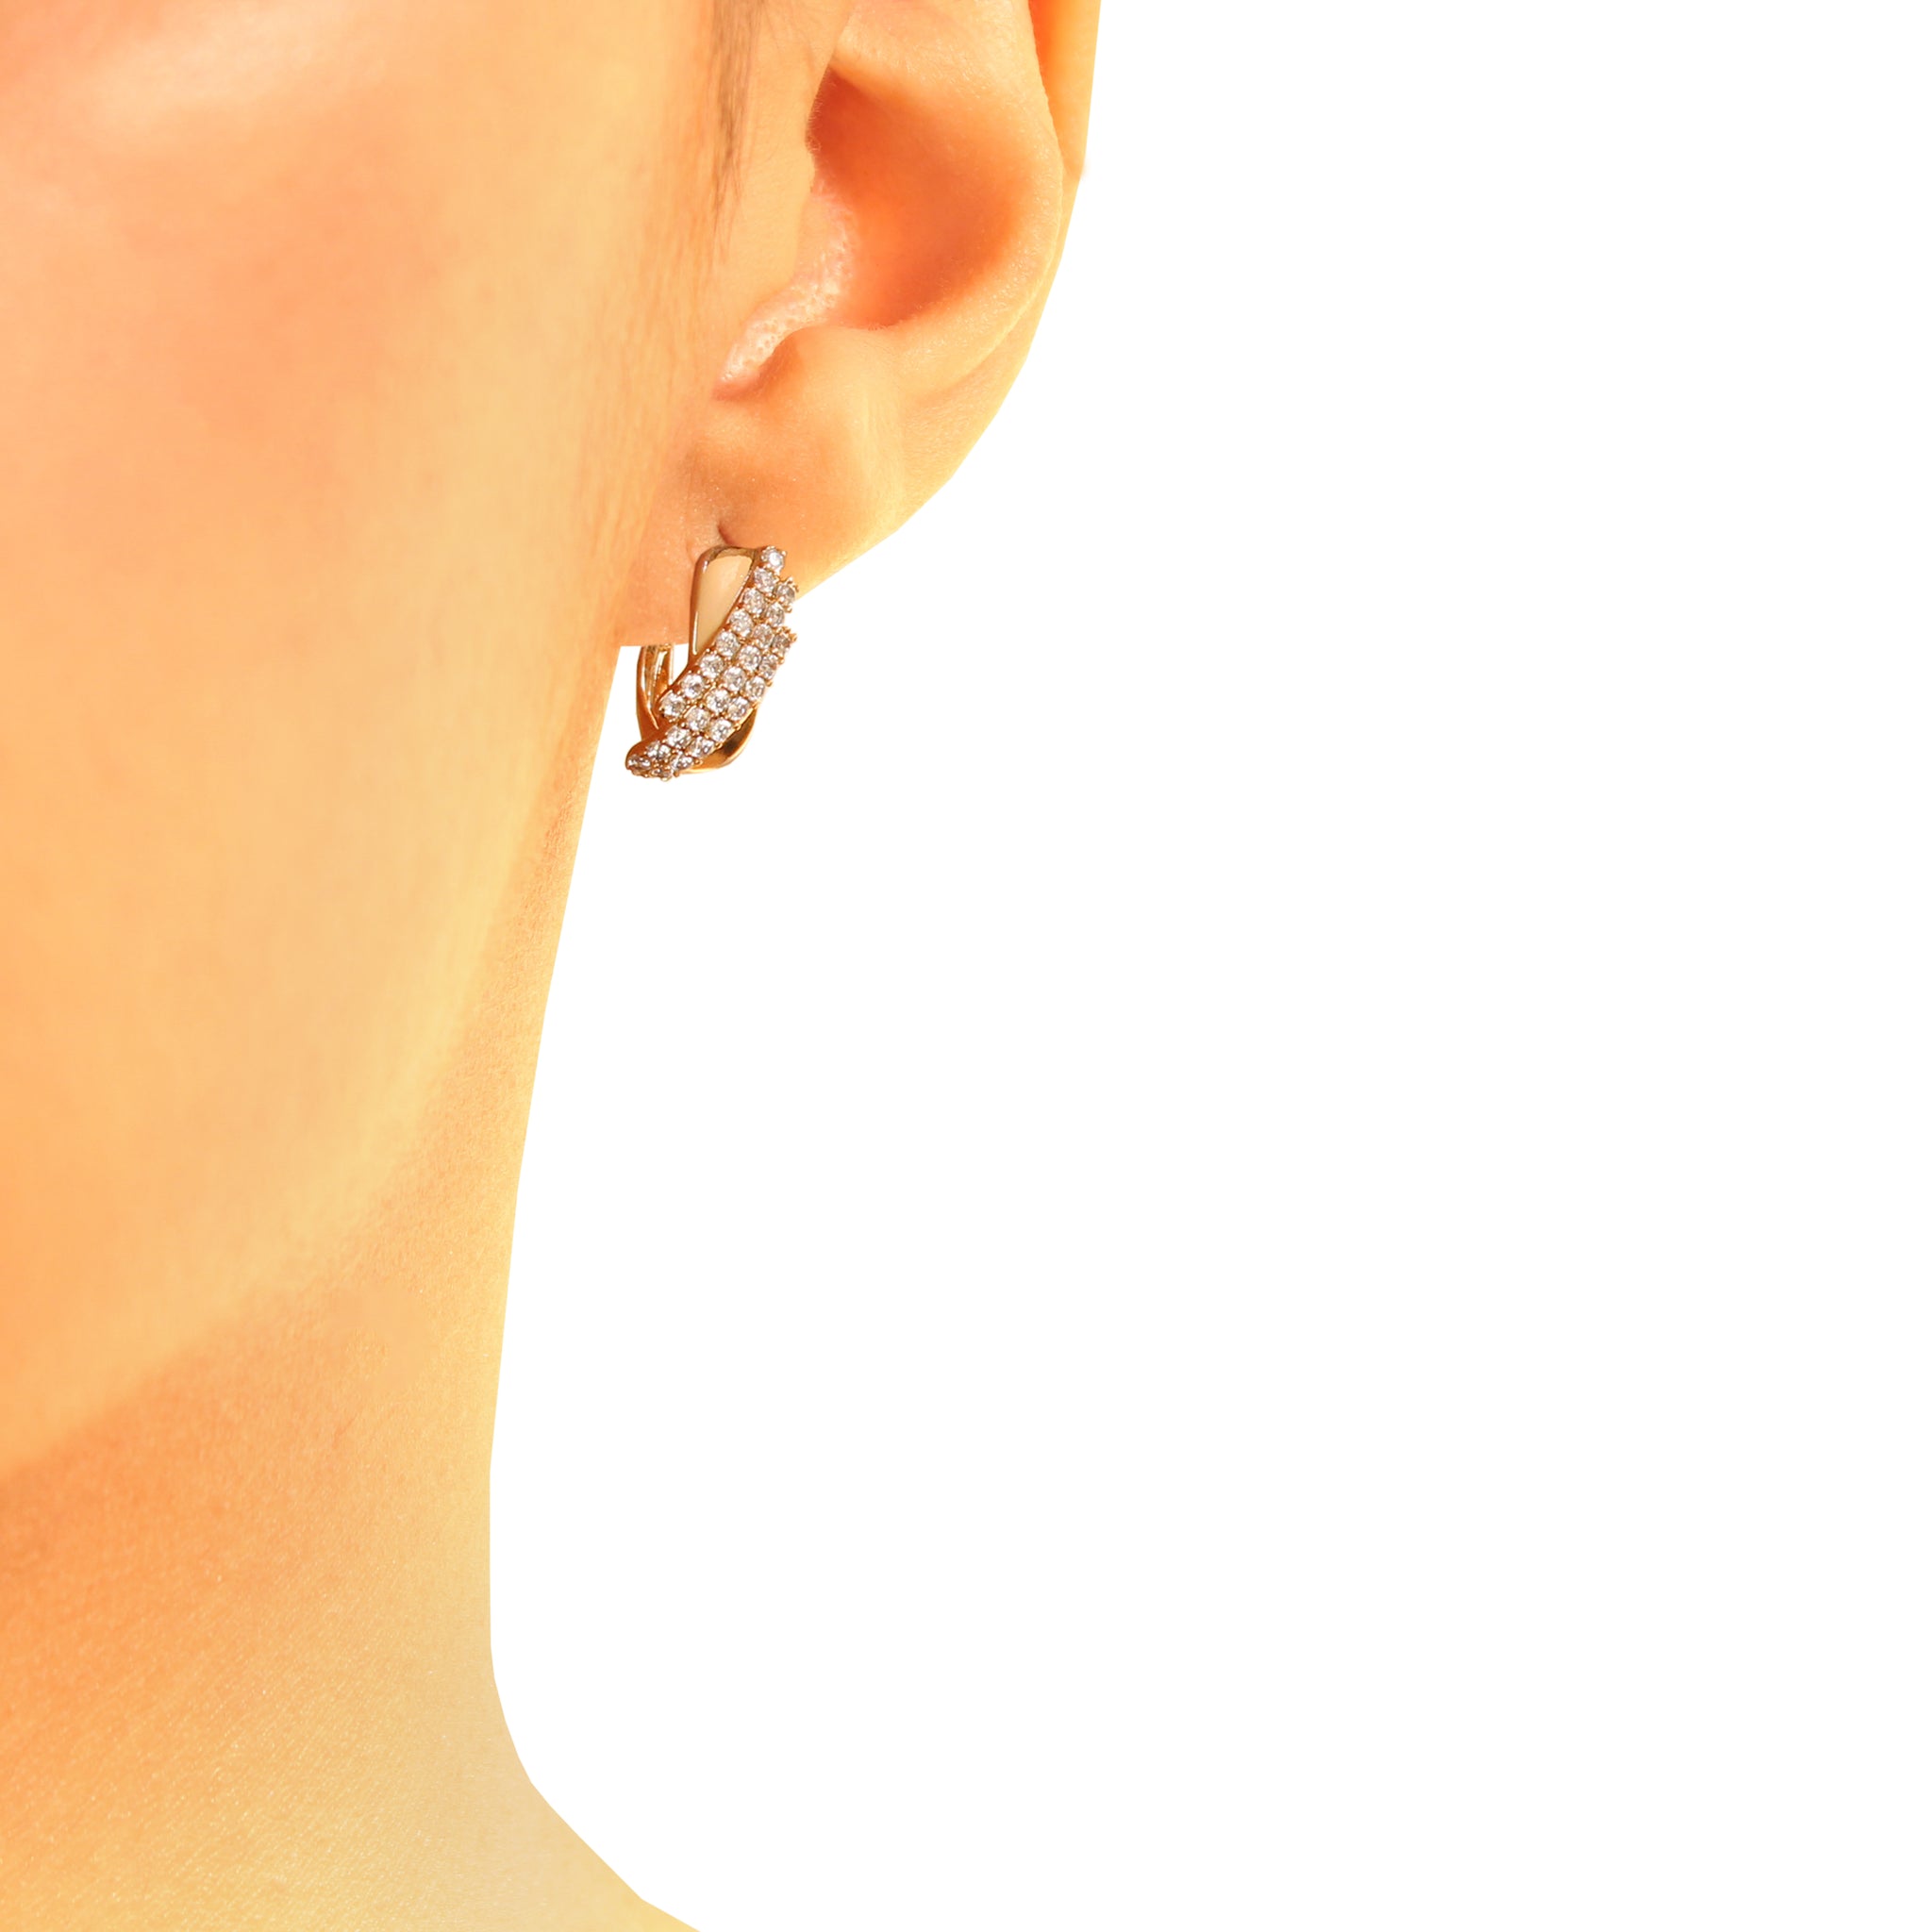 Atlas earring